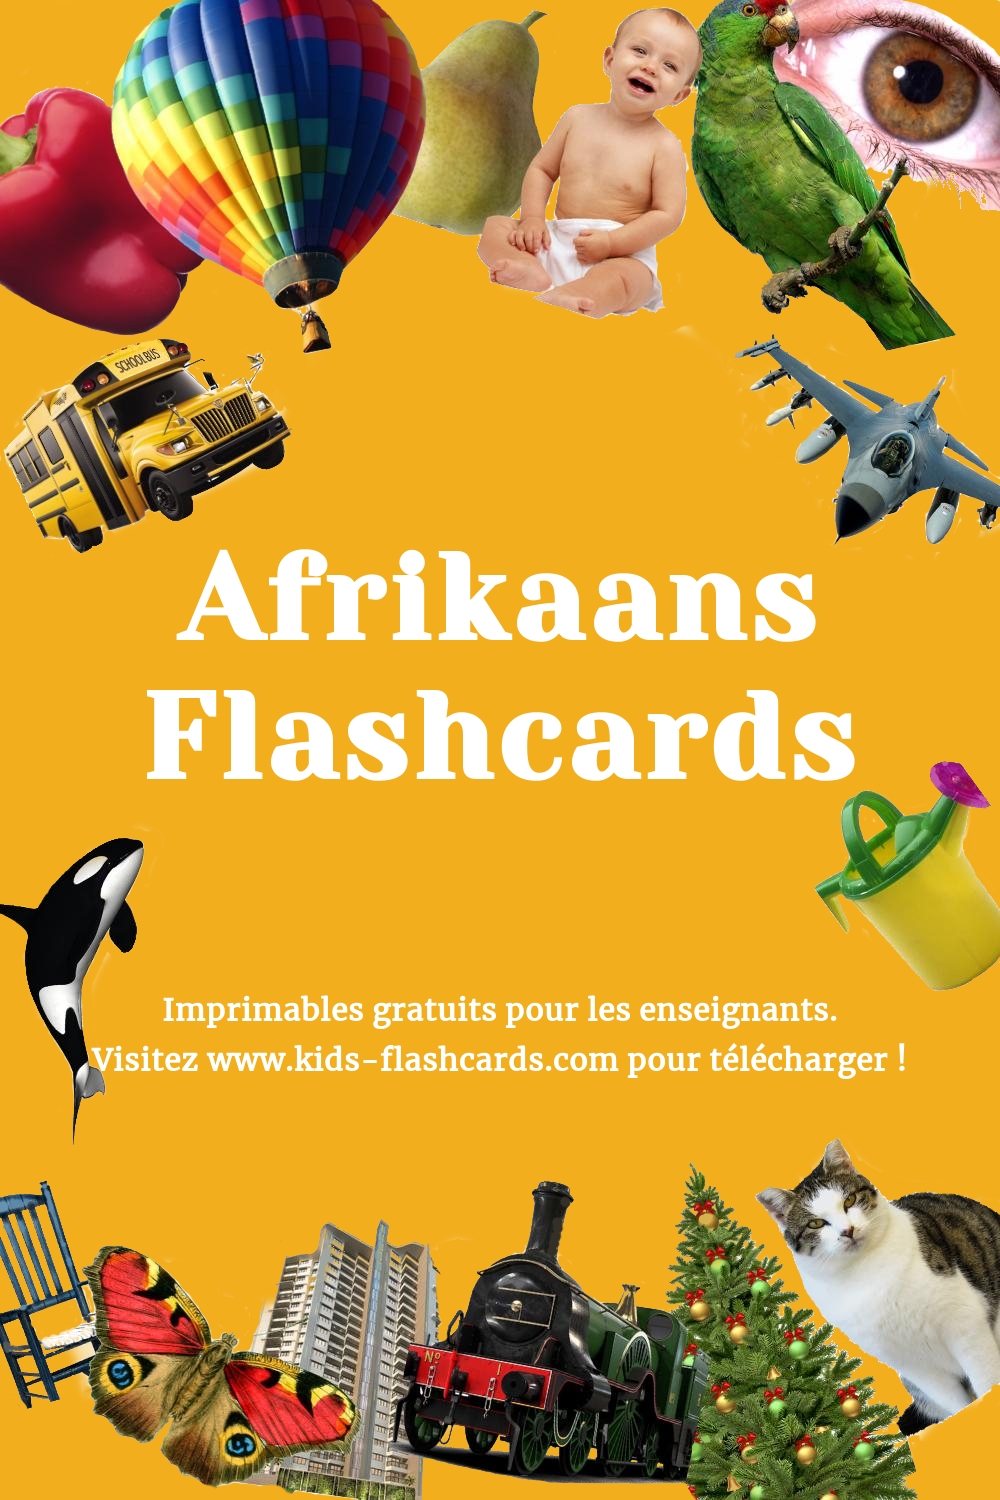 Imprimables gratuits en Afrikaans